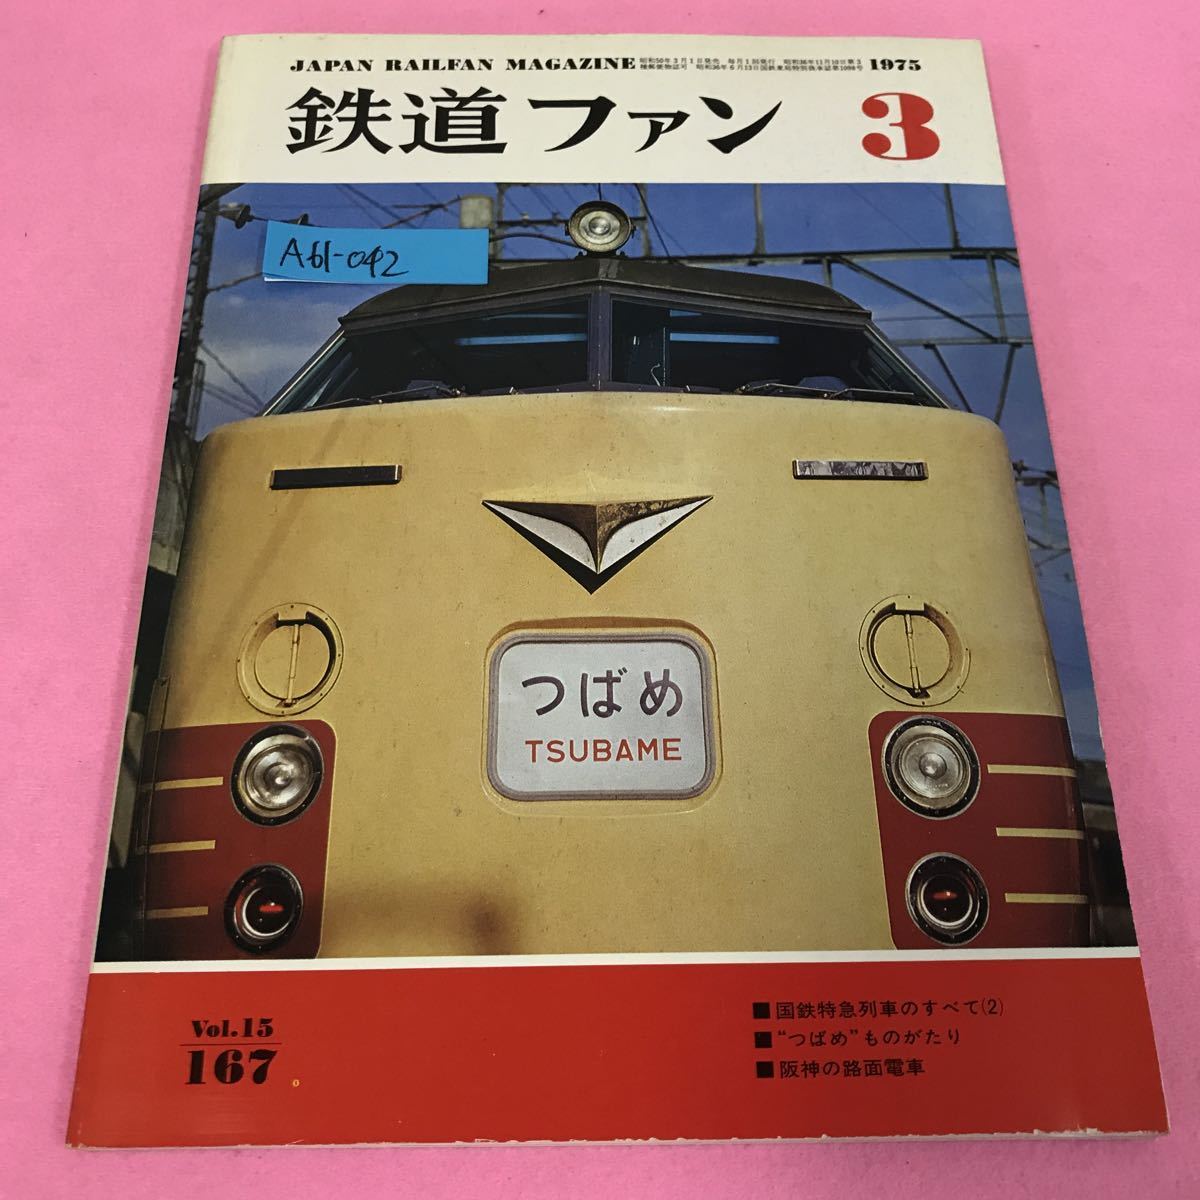 A61-042 鉄道ファン 1975年3月号 惜別のつばめ岡山にて 国鉄特急列車のすべて2 つばめものがたり 阪神の路面電車の画像1